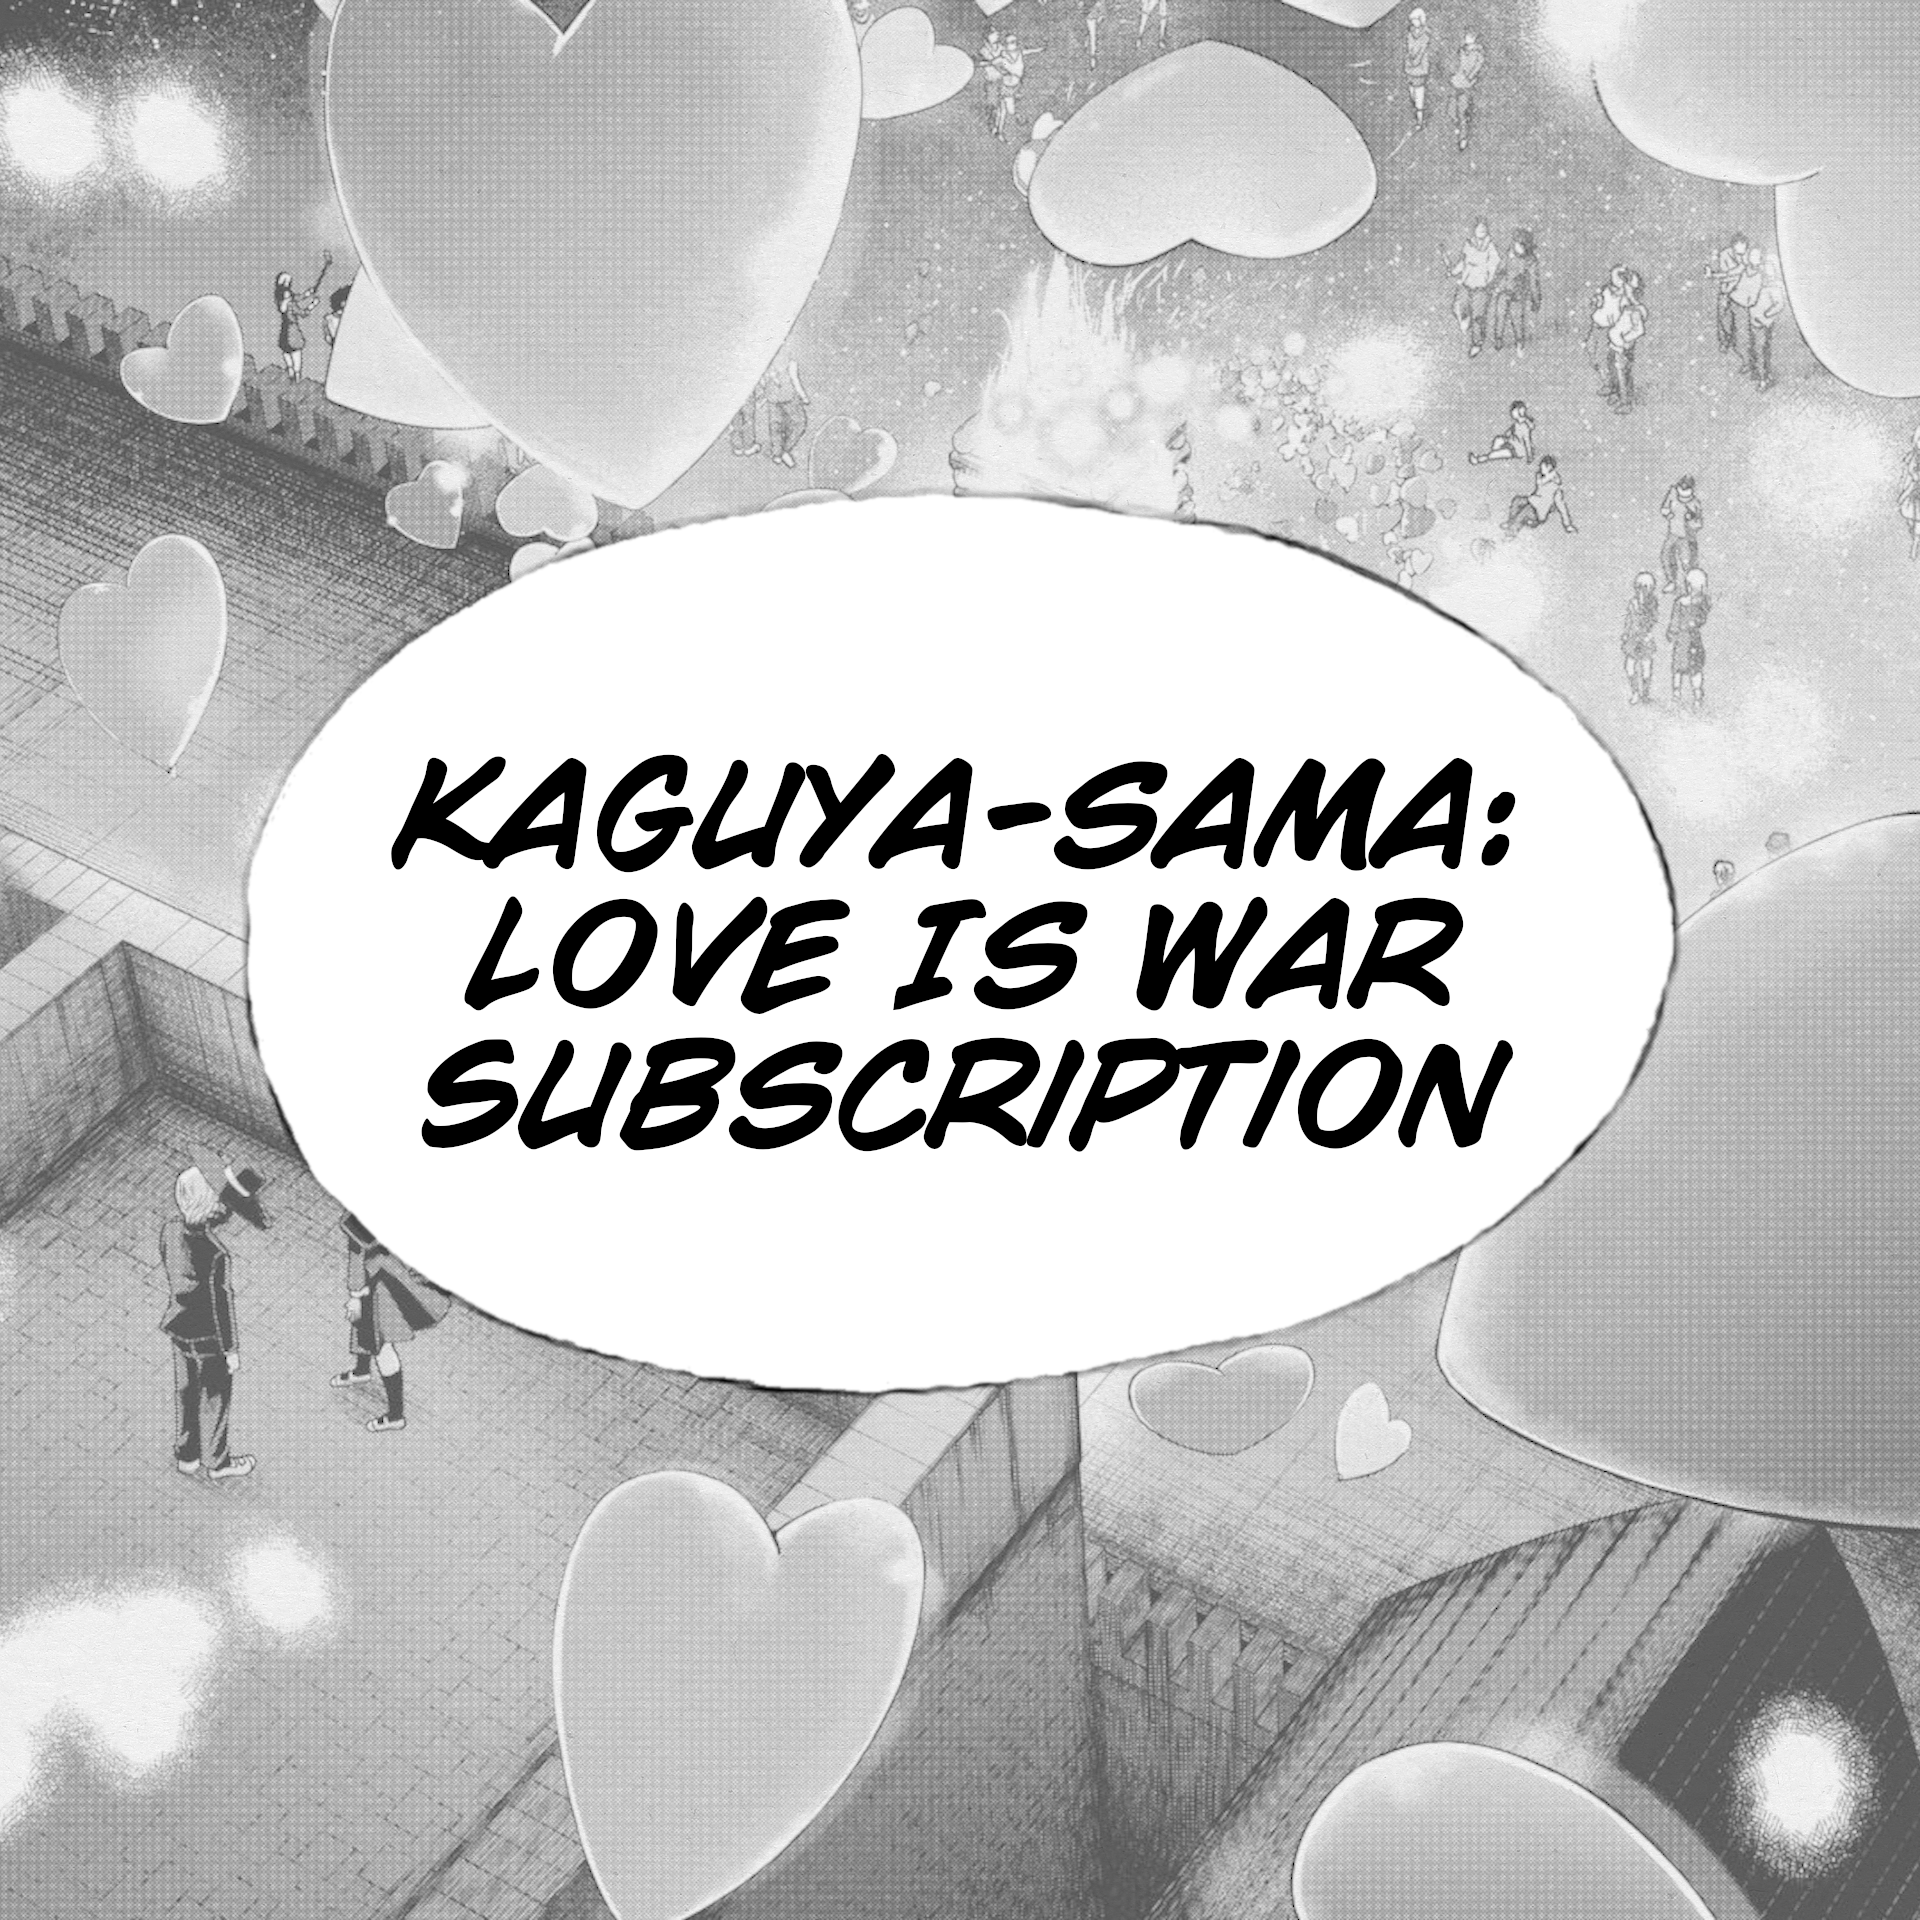 Kaguya-sama: Love Is War Subscription - Manga Warehouse